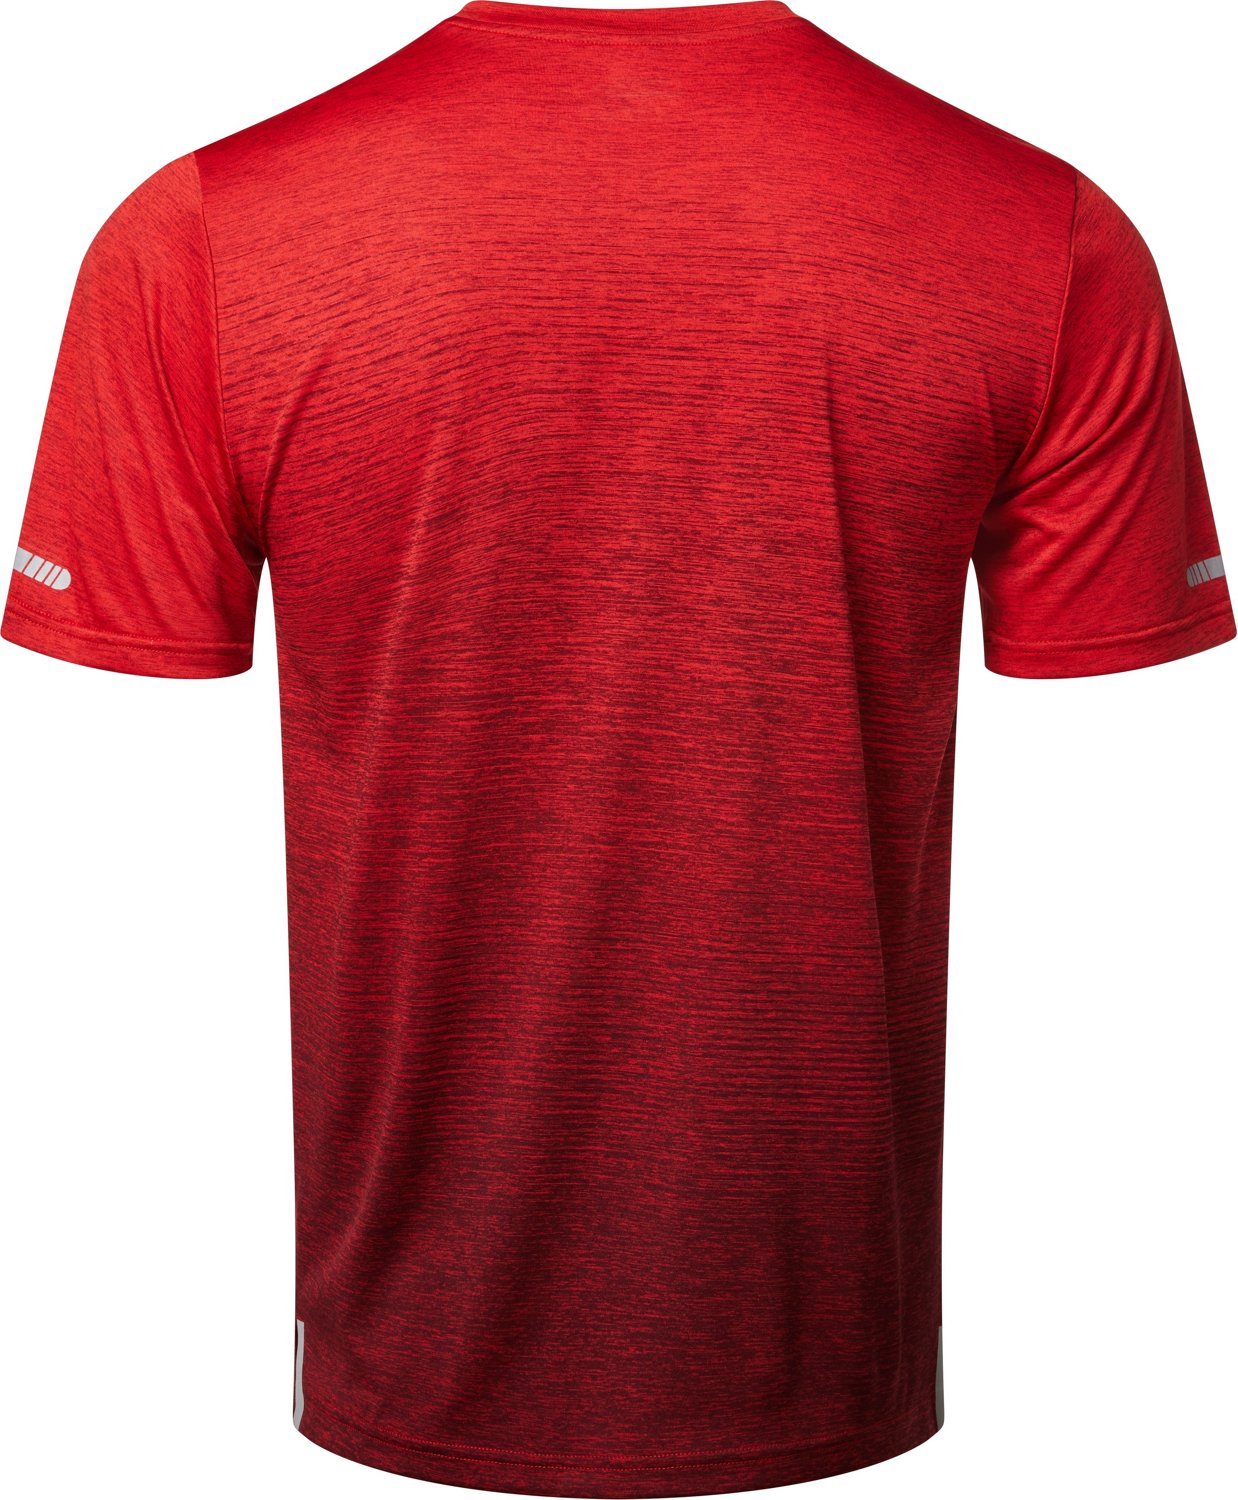 BCG Men's Ombre Running T-shirt